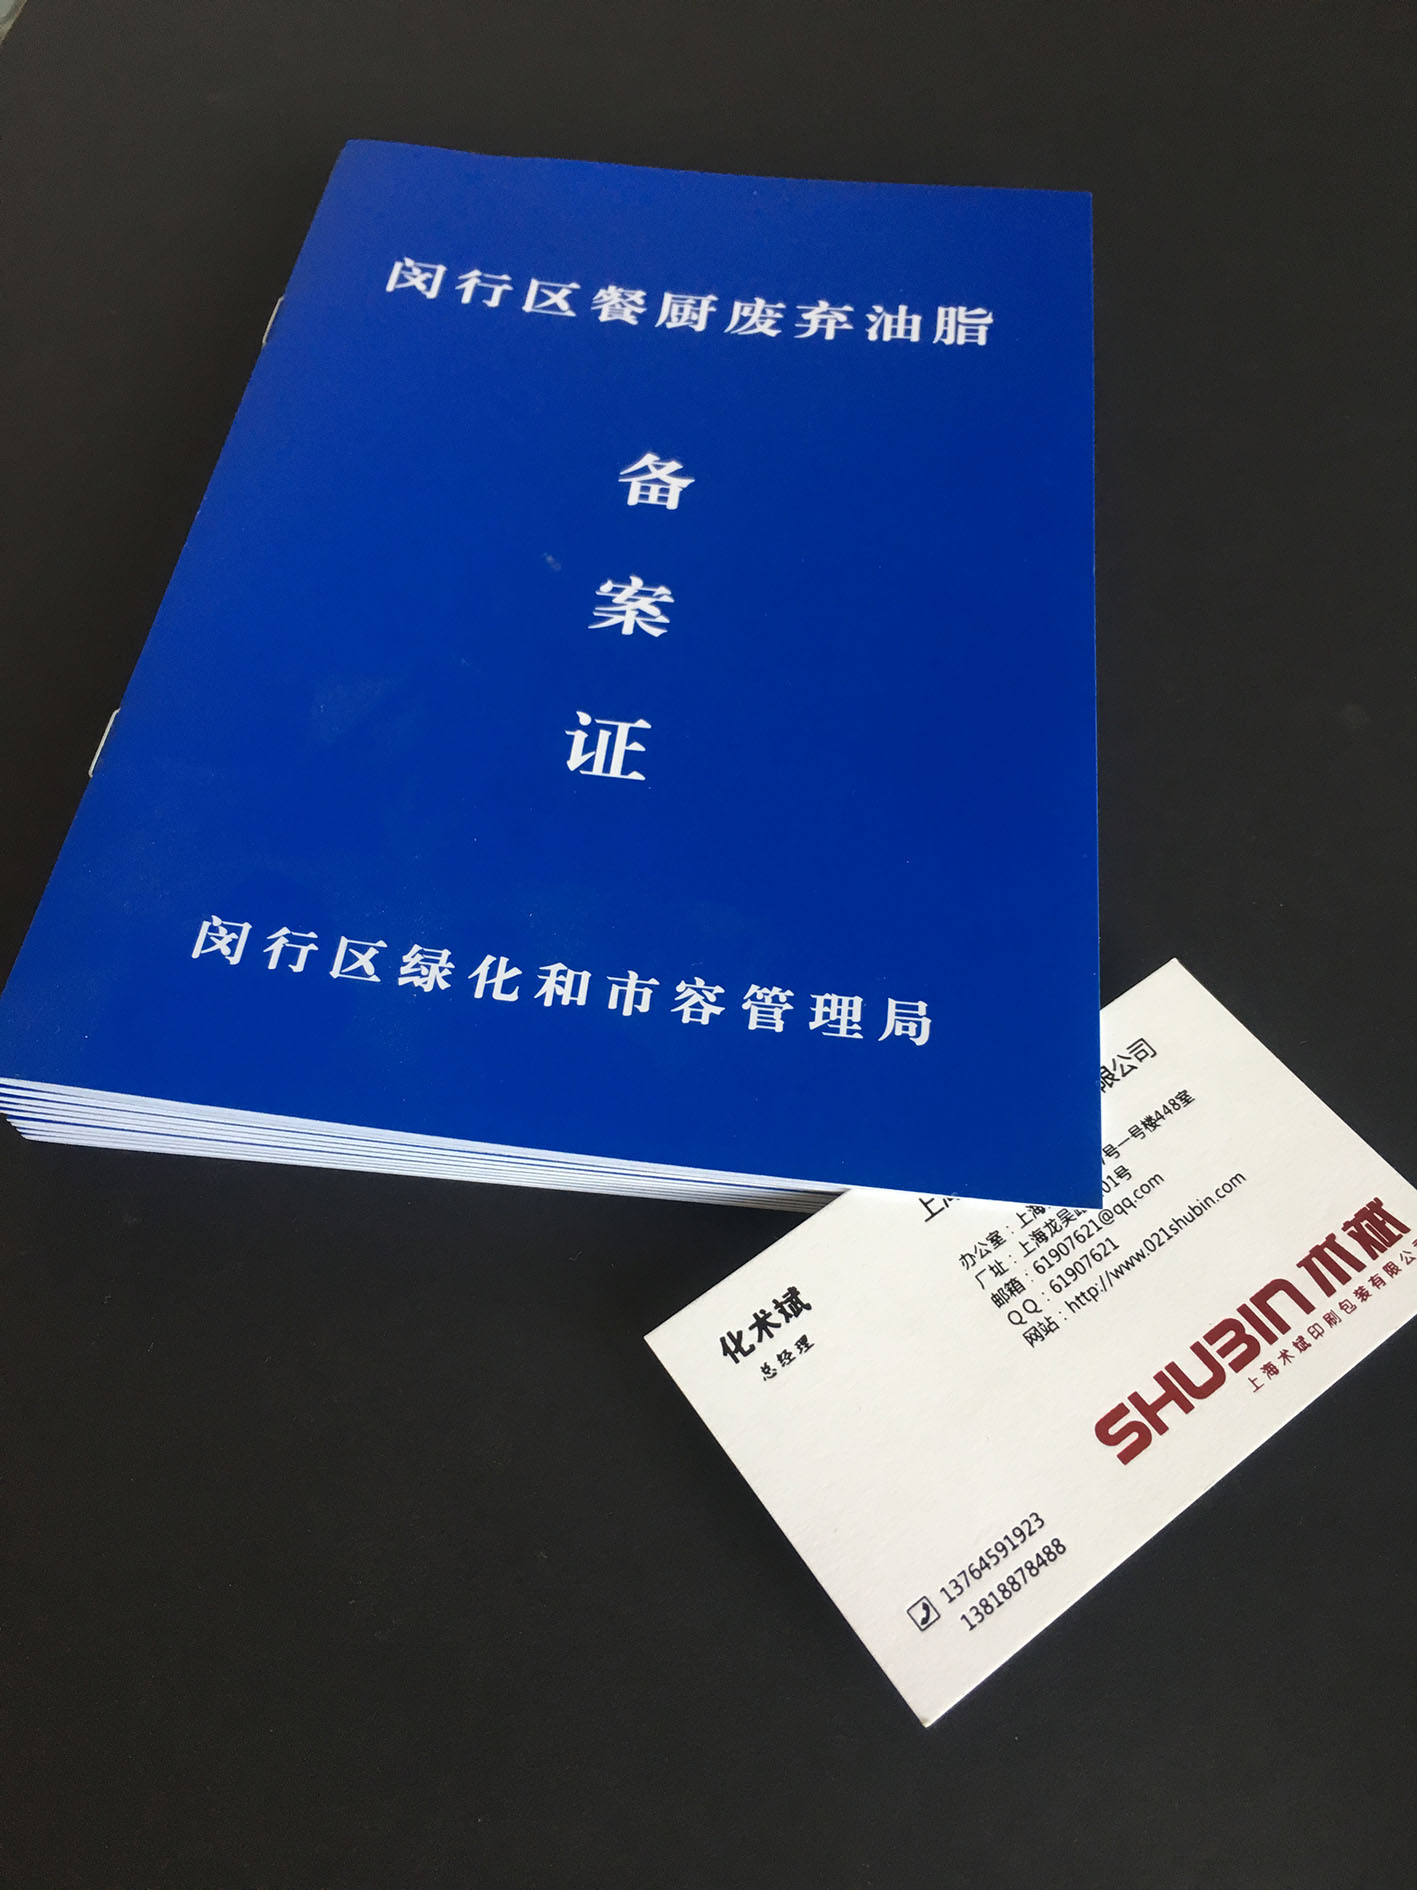 上海林鑫印刷材料